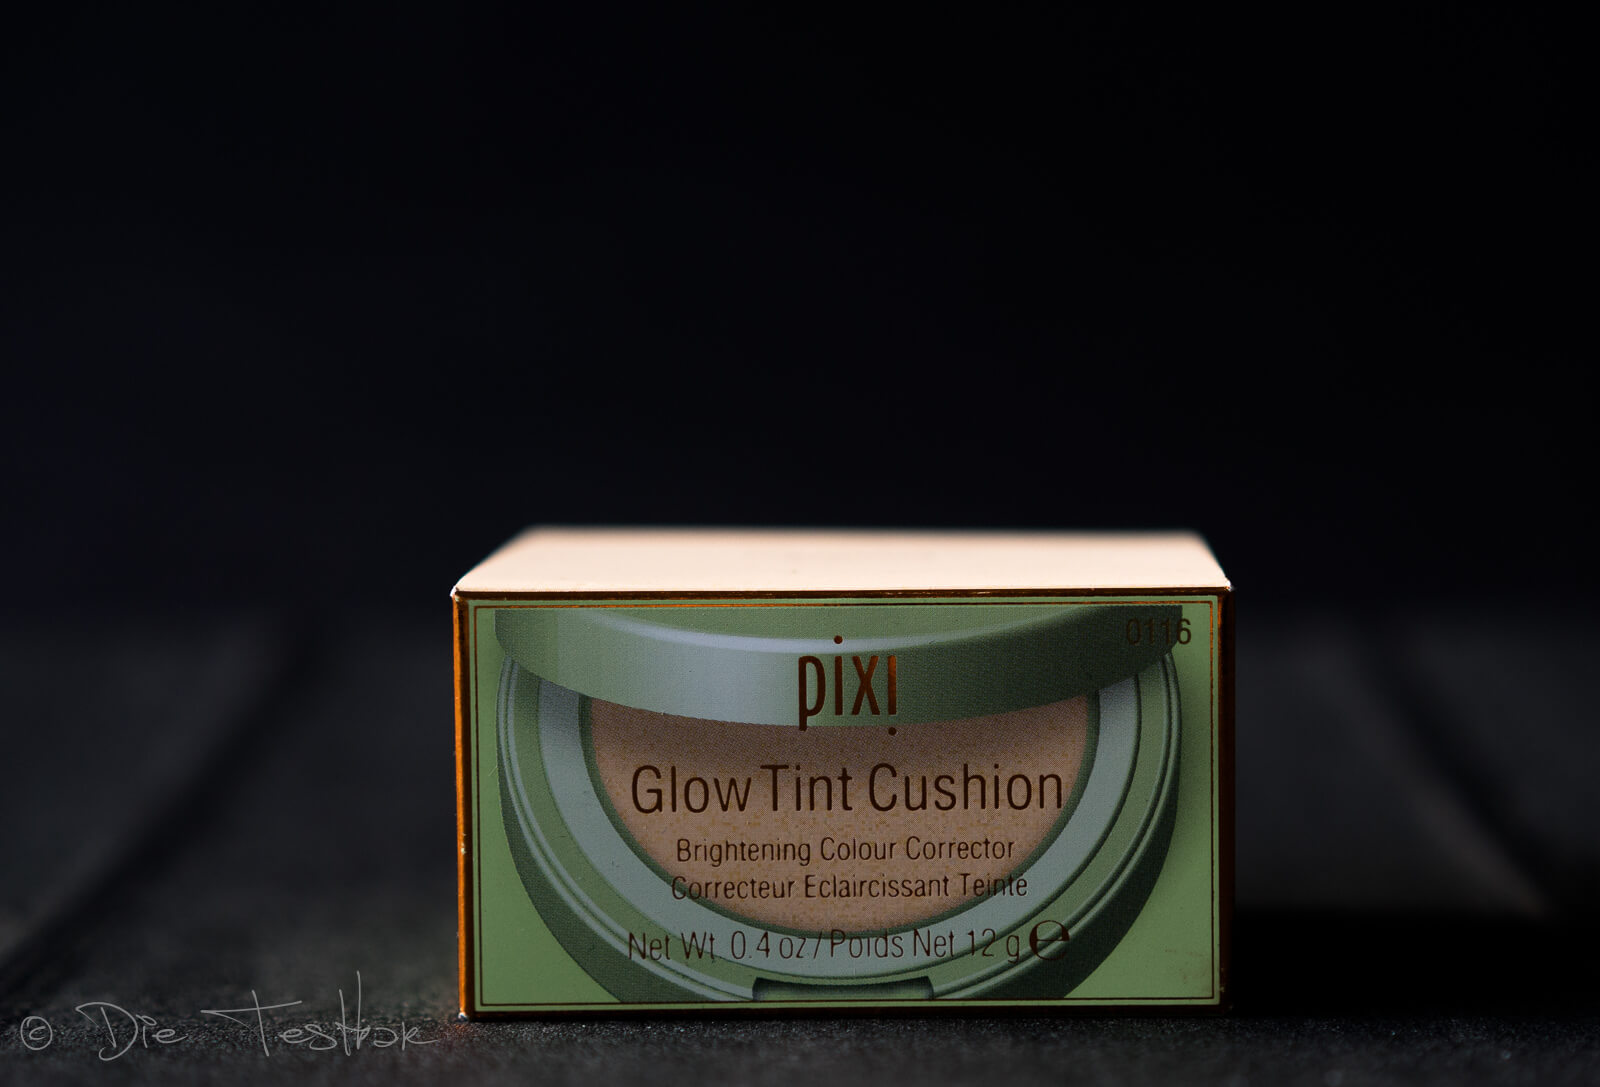 Glow Tint Cushion von Pixi